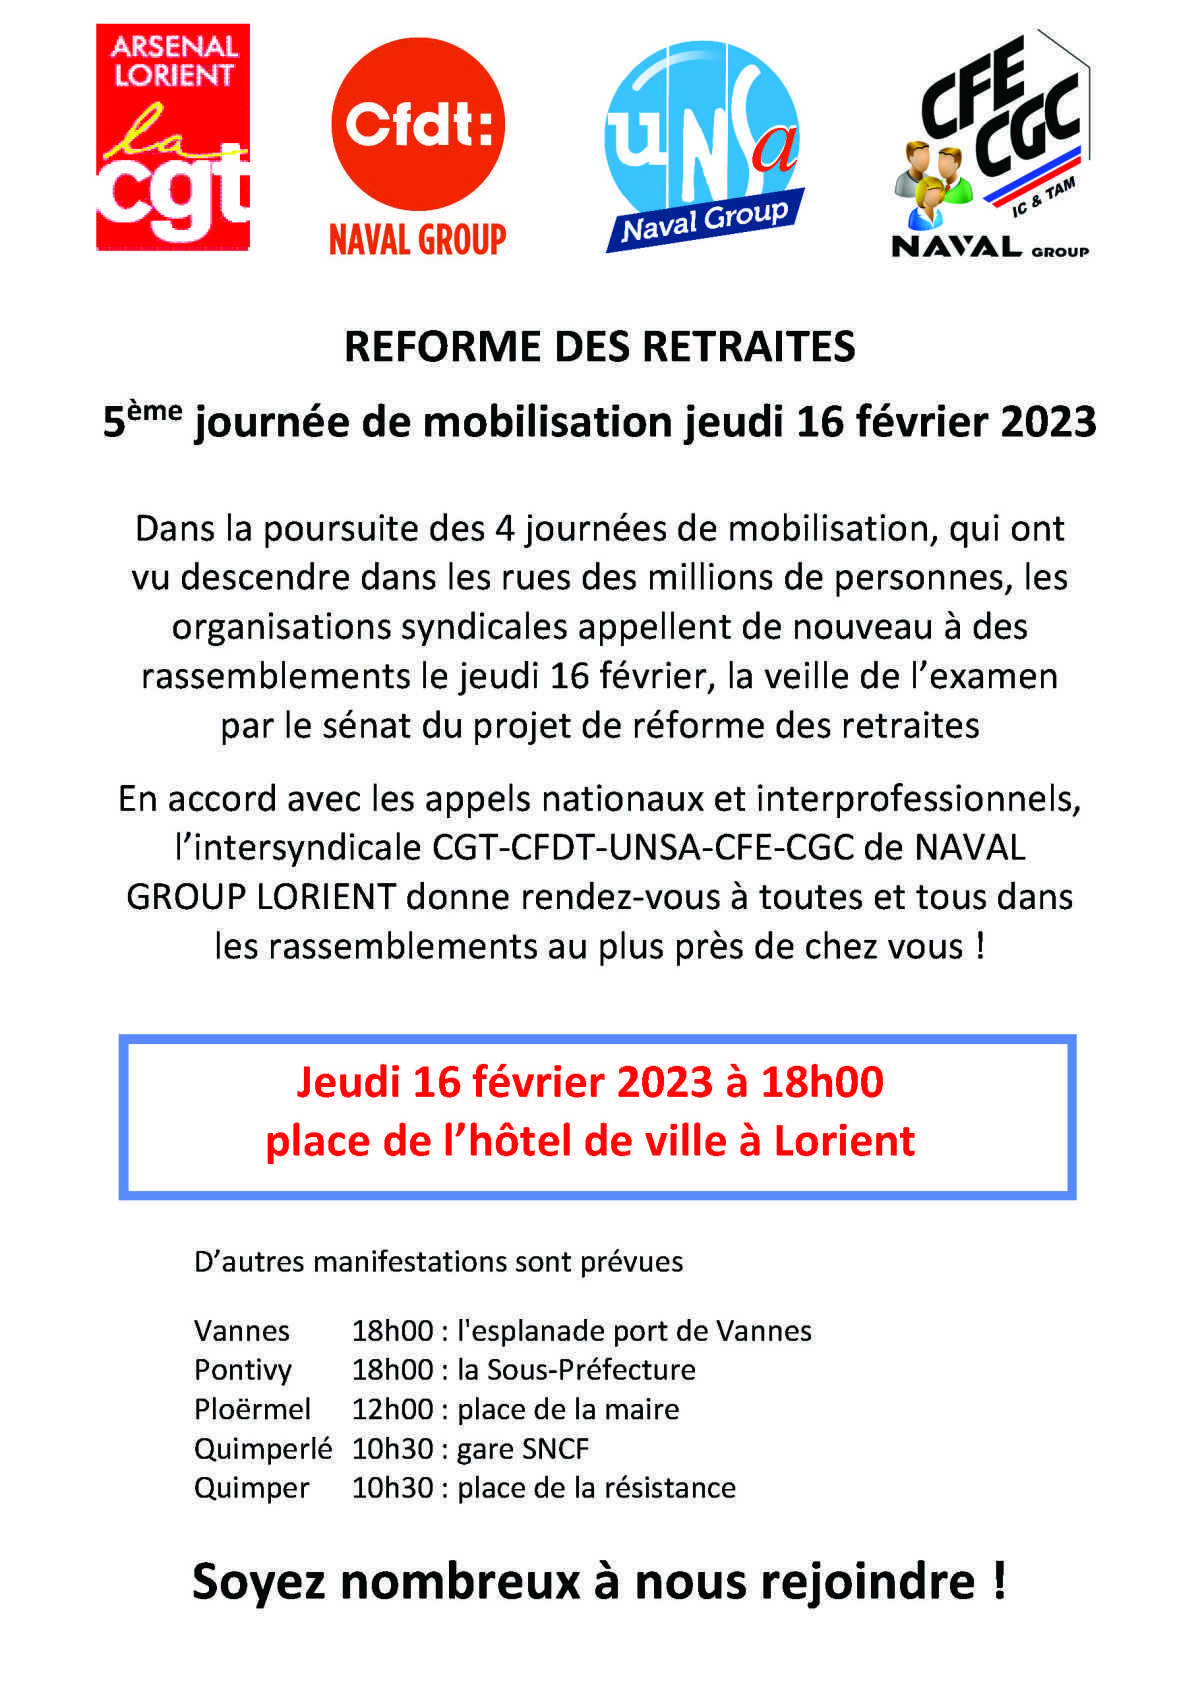 REFORME DES RETRAITES : 5ème journée de mobilisation jeudi 16 février 2023 à Lorient